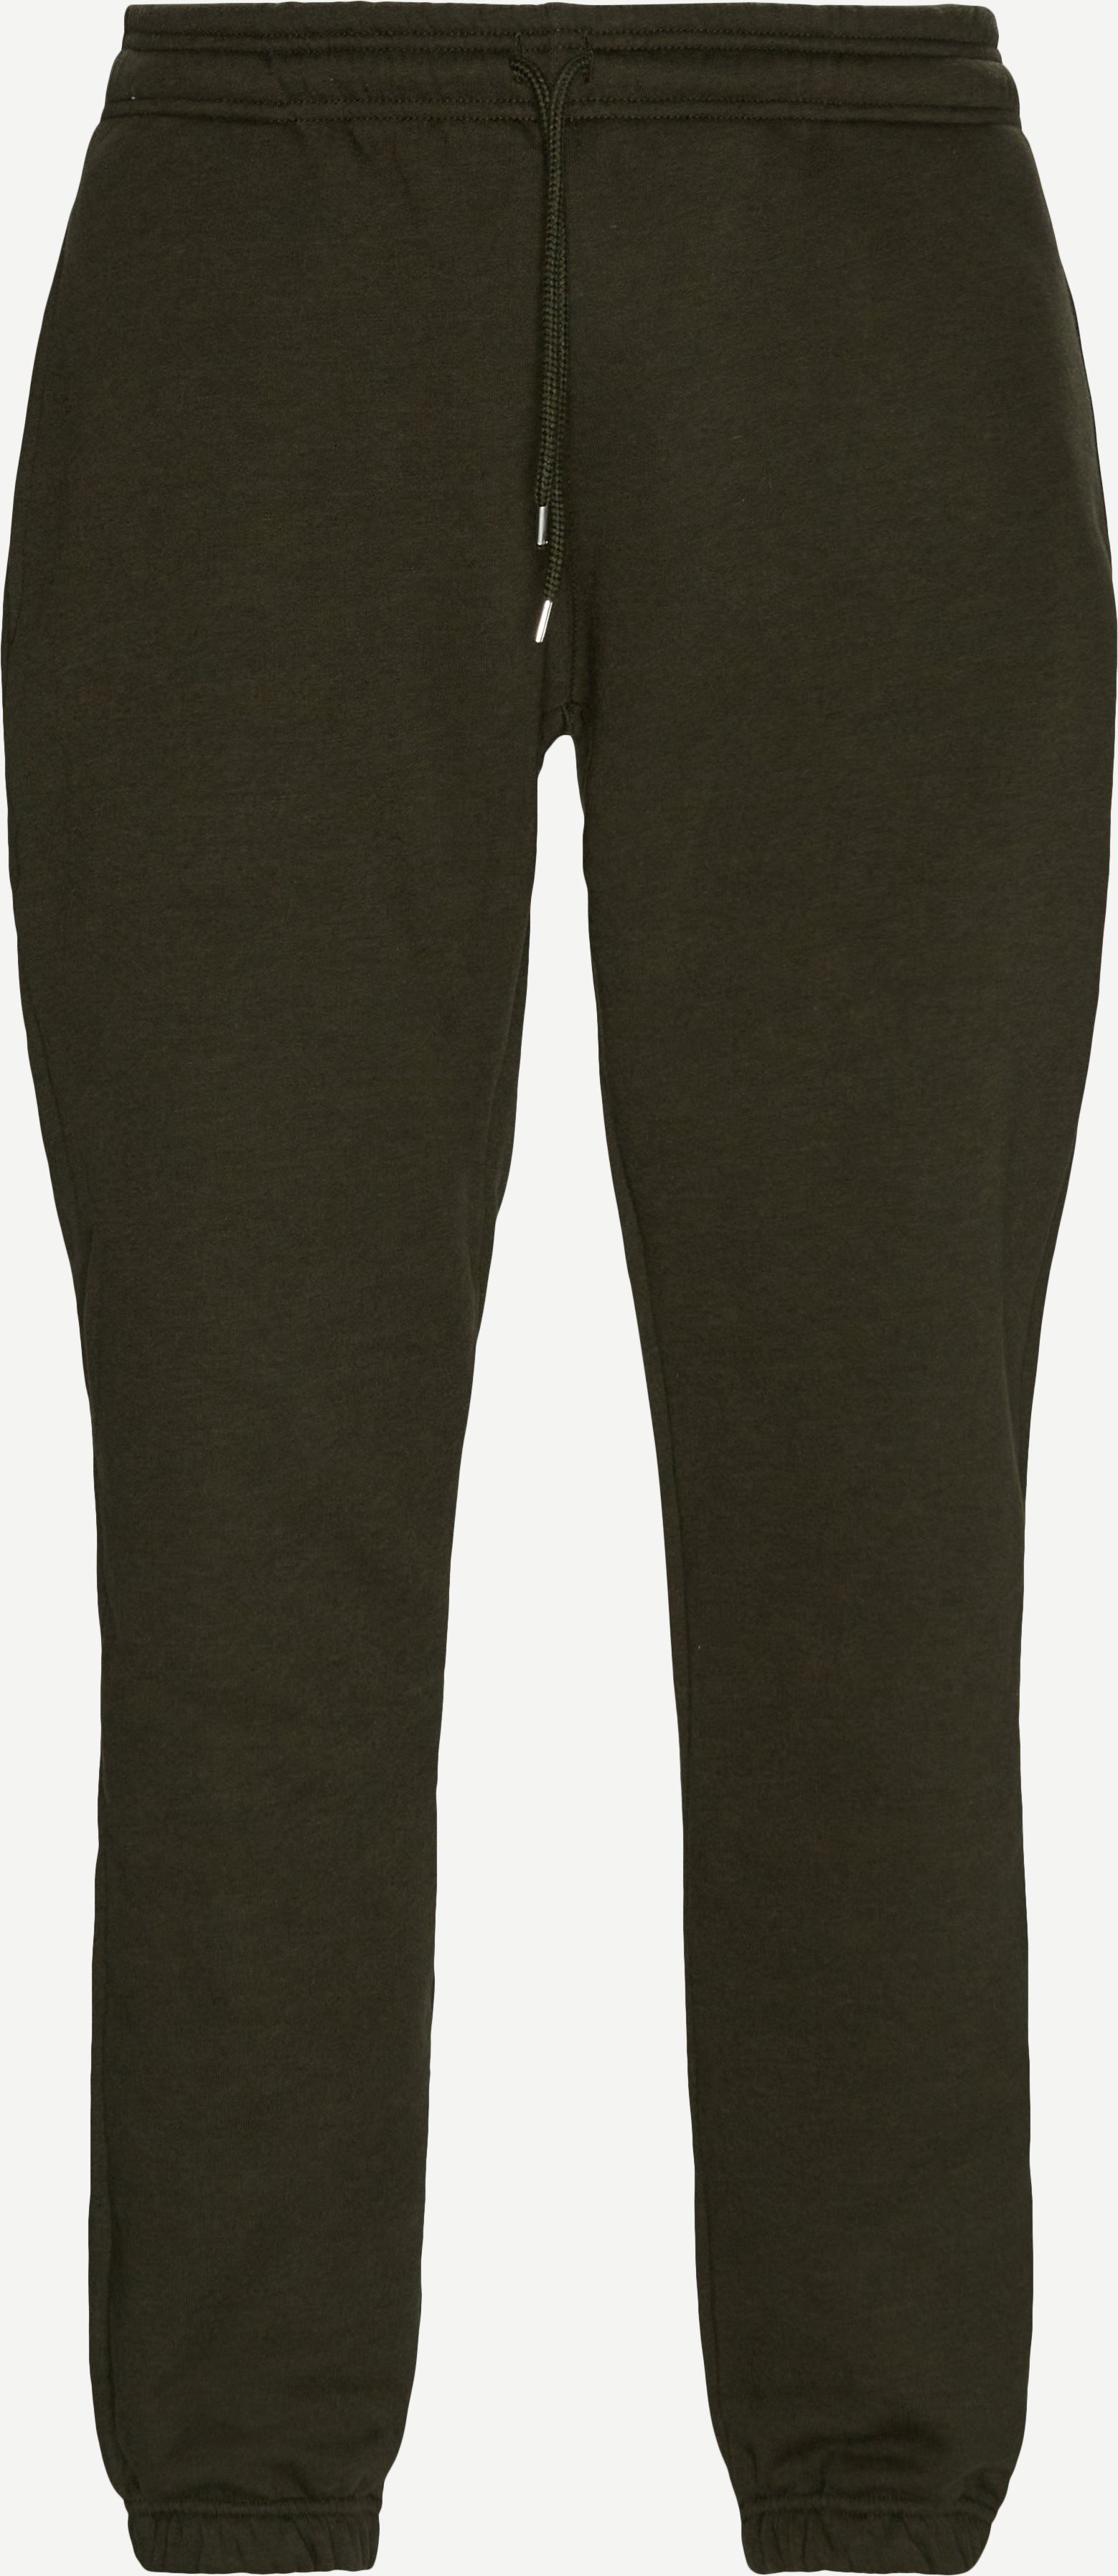 Granada Sweatpants - Trousers - Regular fit - Army